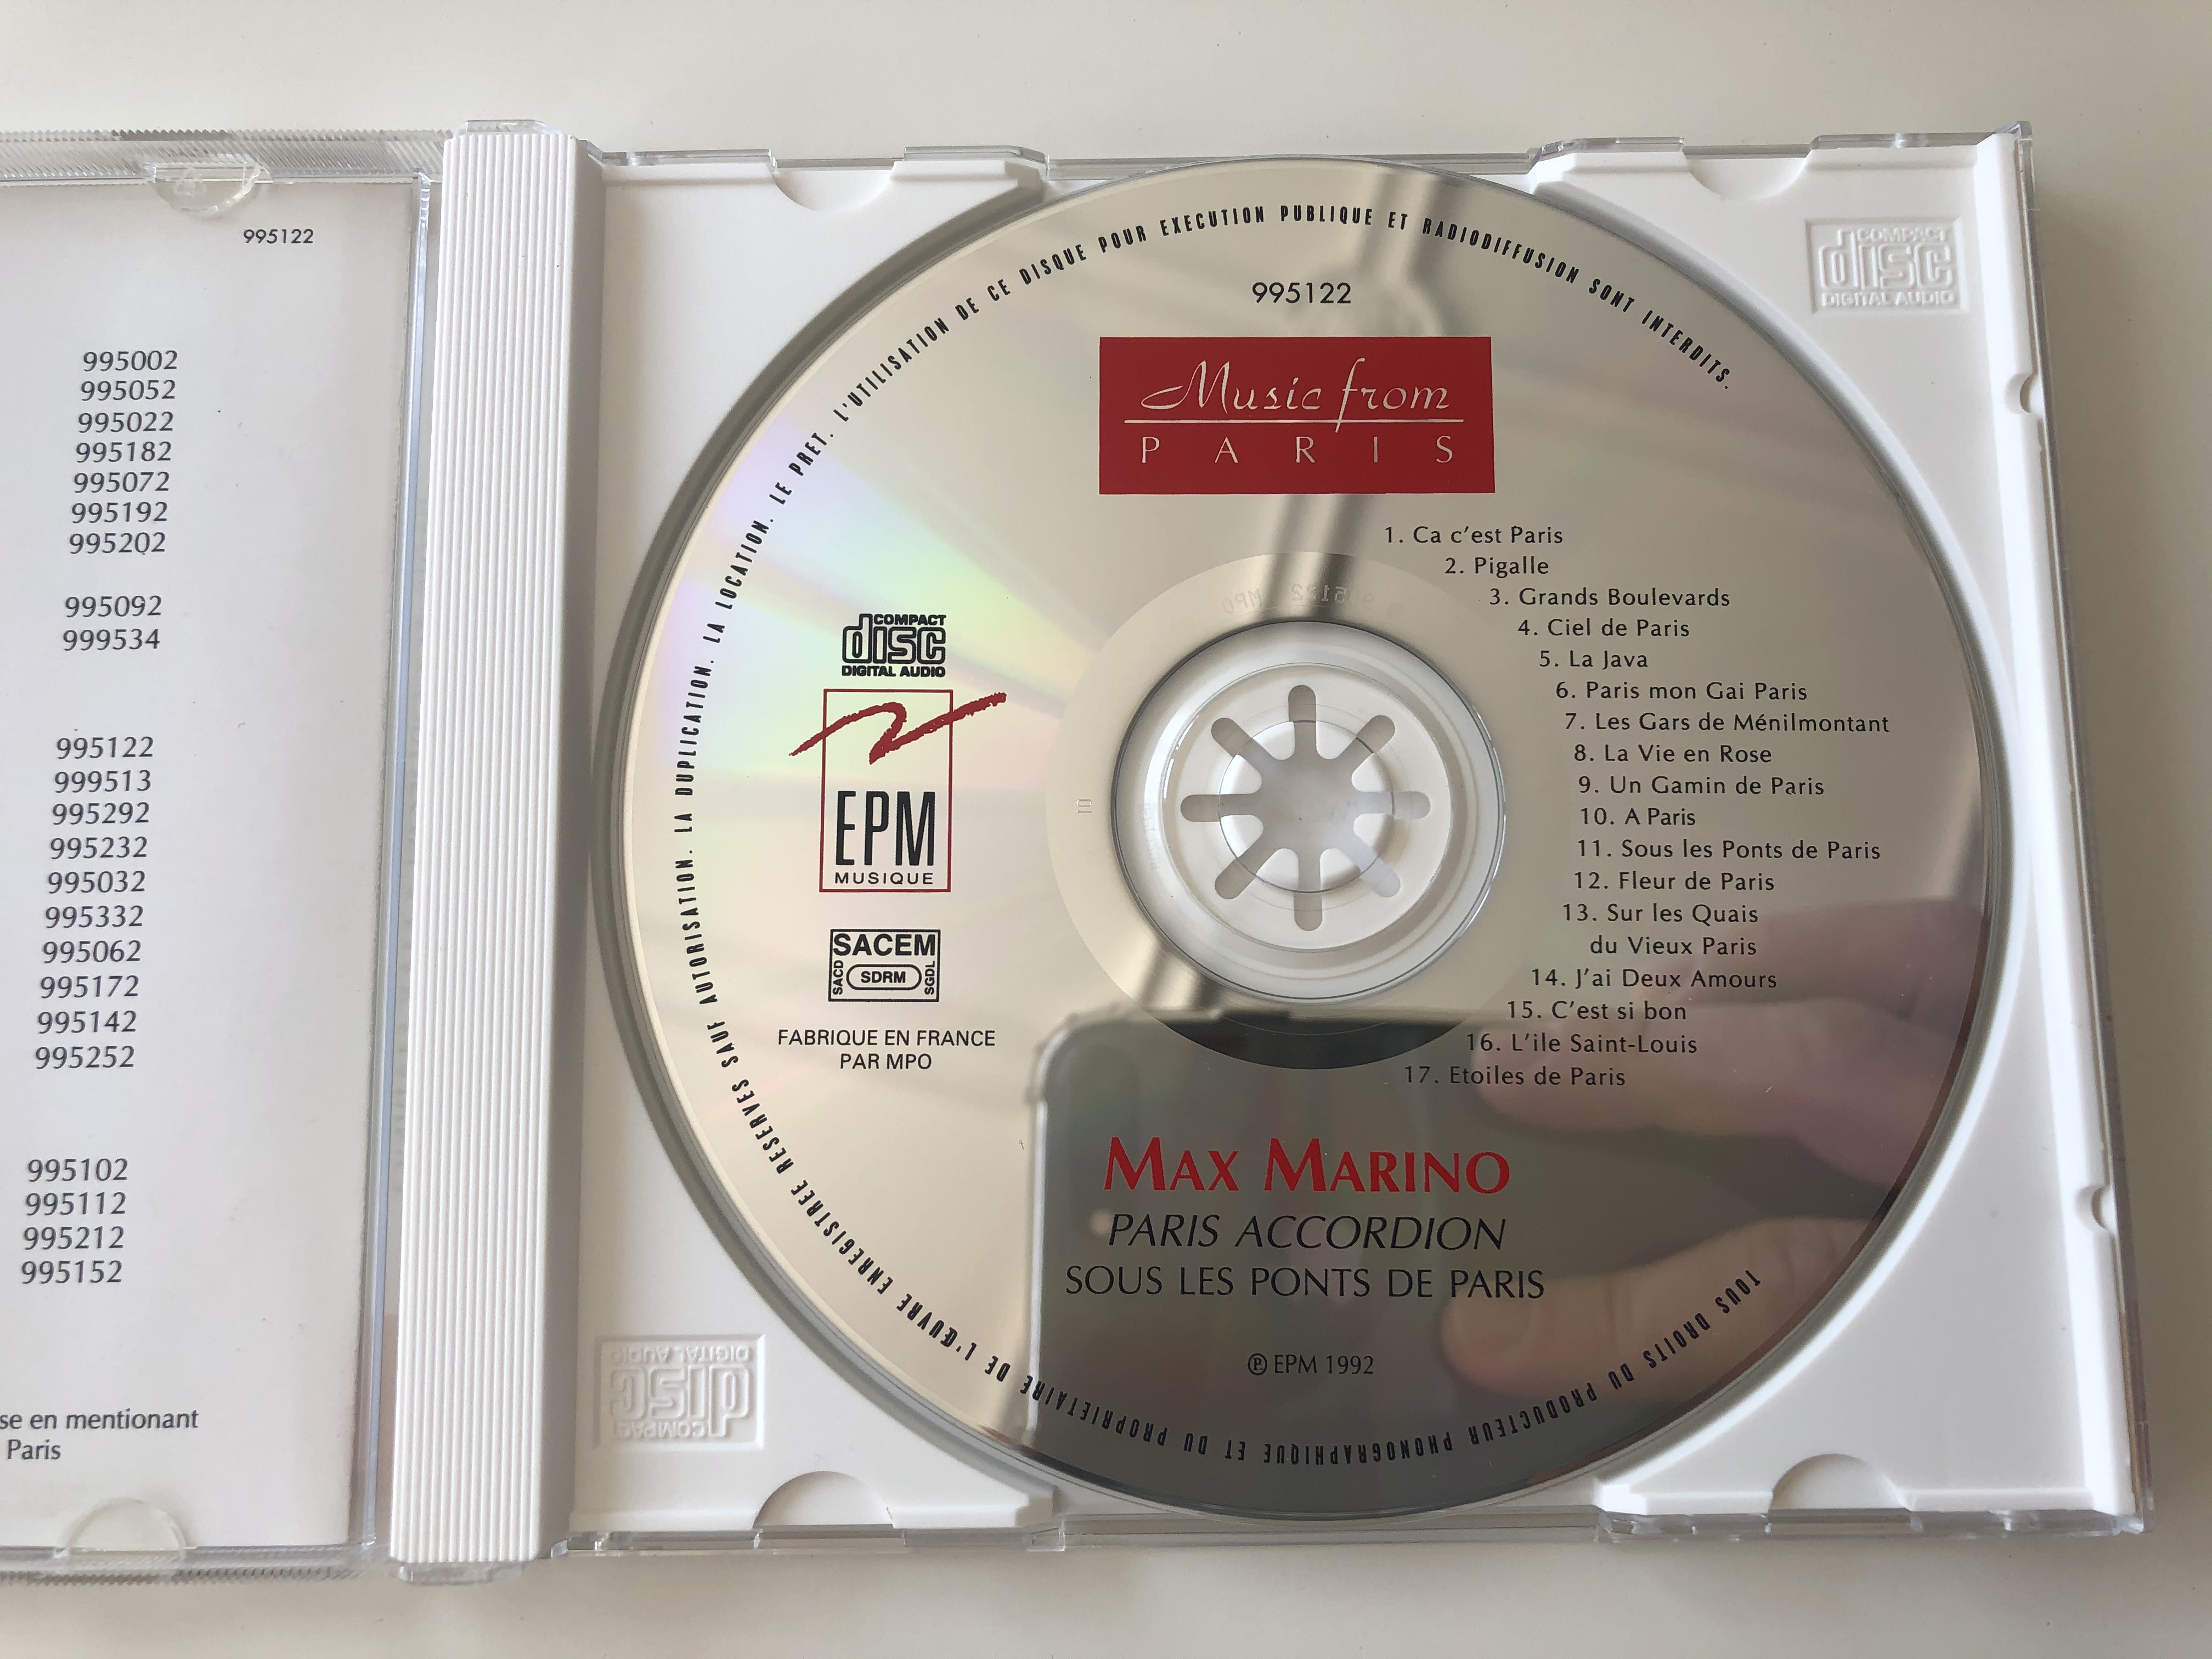 music-from-paris-paris-accordion-max-marino-sous-les-ponts-de-paris-epm-musique-audio-cd-1992-995122-3-.jpg